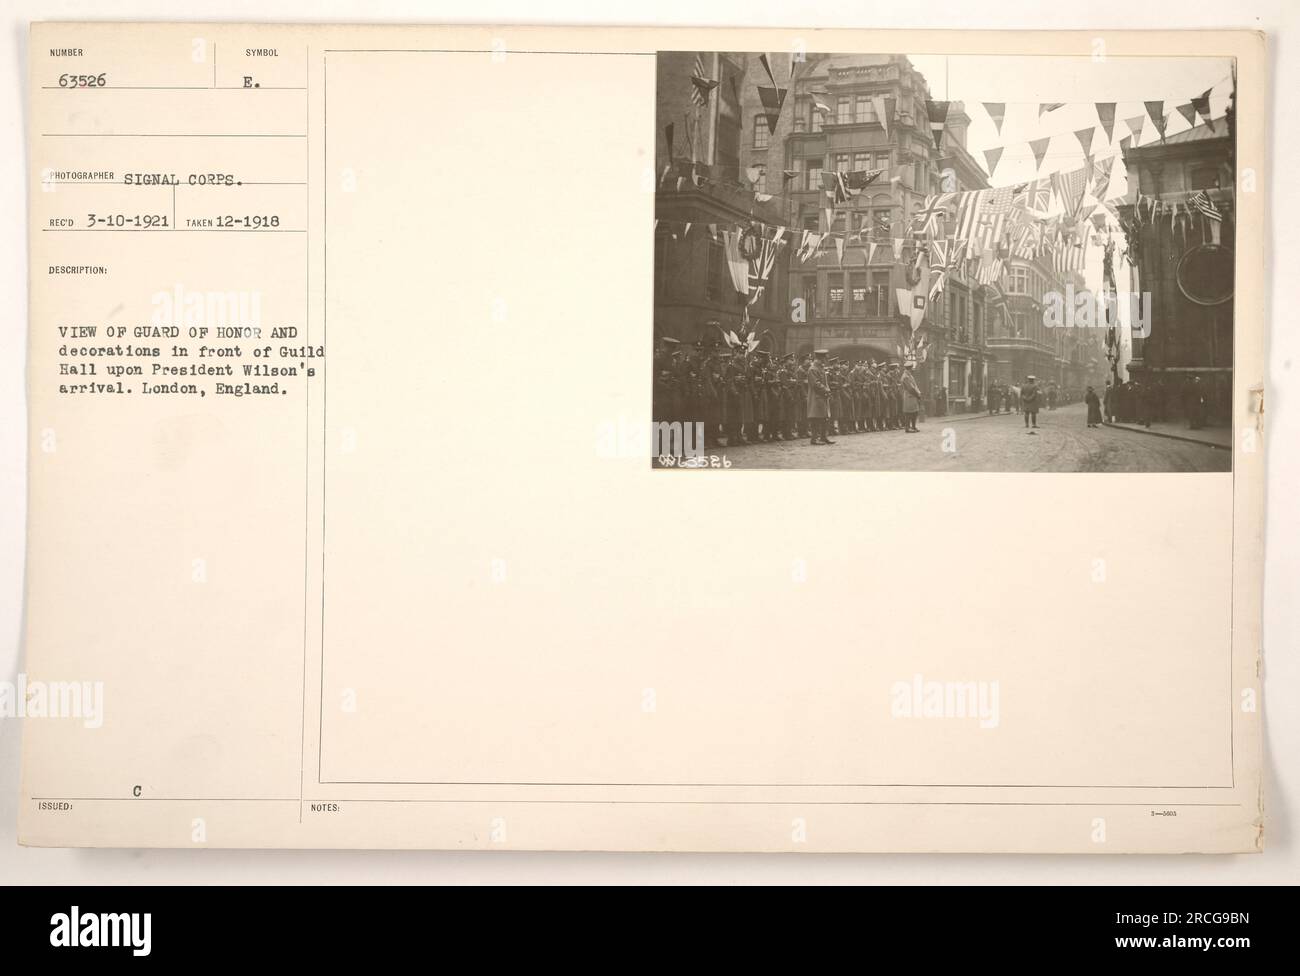 Il presidente Wilson arriva alla Guild Hall a Londra, in Inghilterra, accolto da una Guardia d'Onore e decorazioni. Questa fotografia è stata scattata nel dicembre 1918 e faceva parte della collezione di attività militari americane durante la prima guerra mondiale. Fotografo Symbol: Signal Corps. Foto Stock